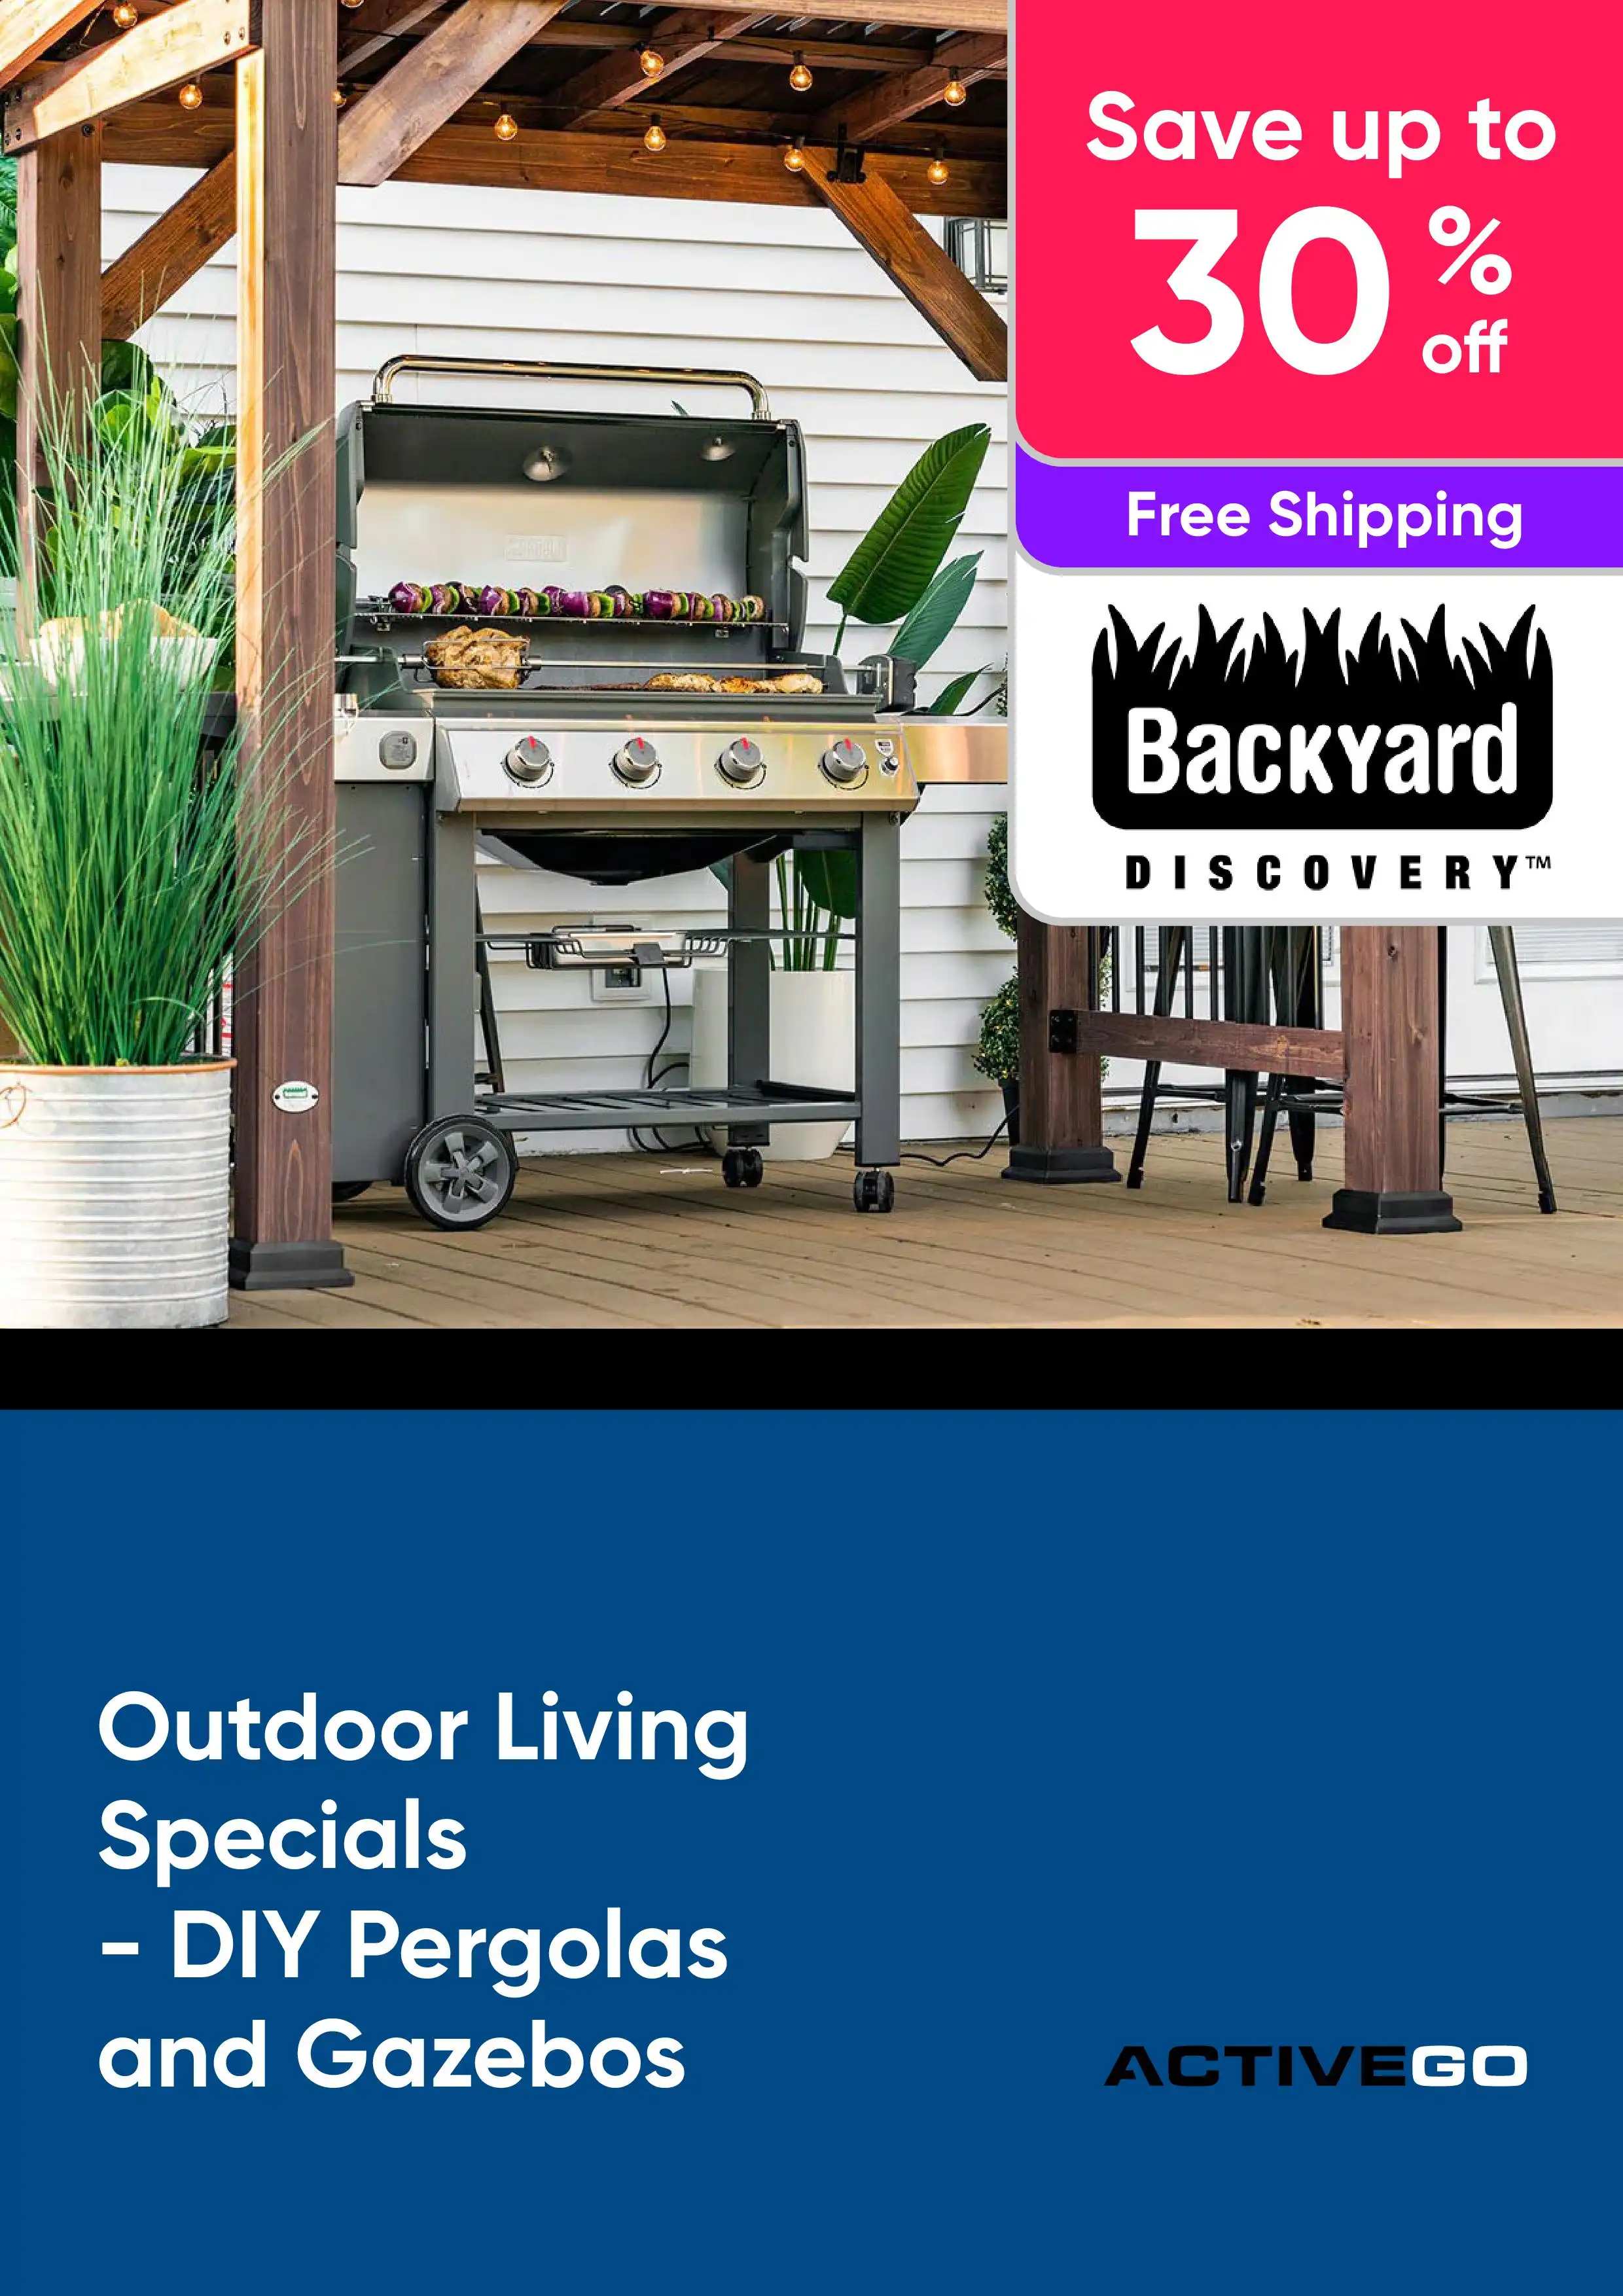 Outdoor Living Specials - DIY Pergolas and Gazebos - Save up to 30% off